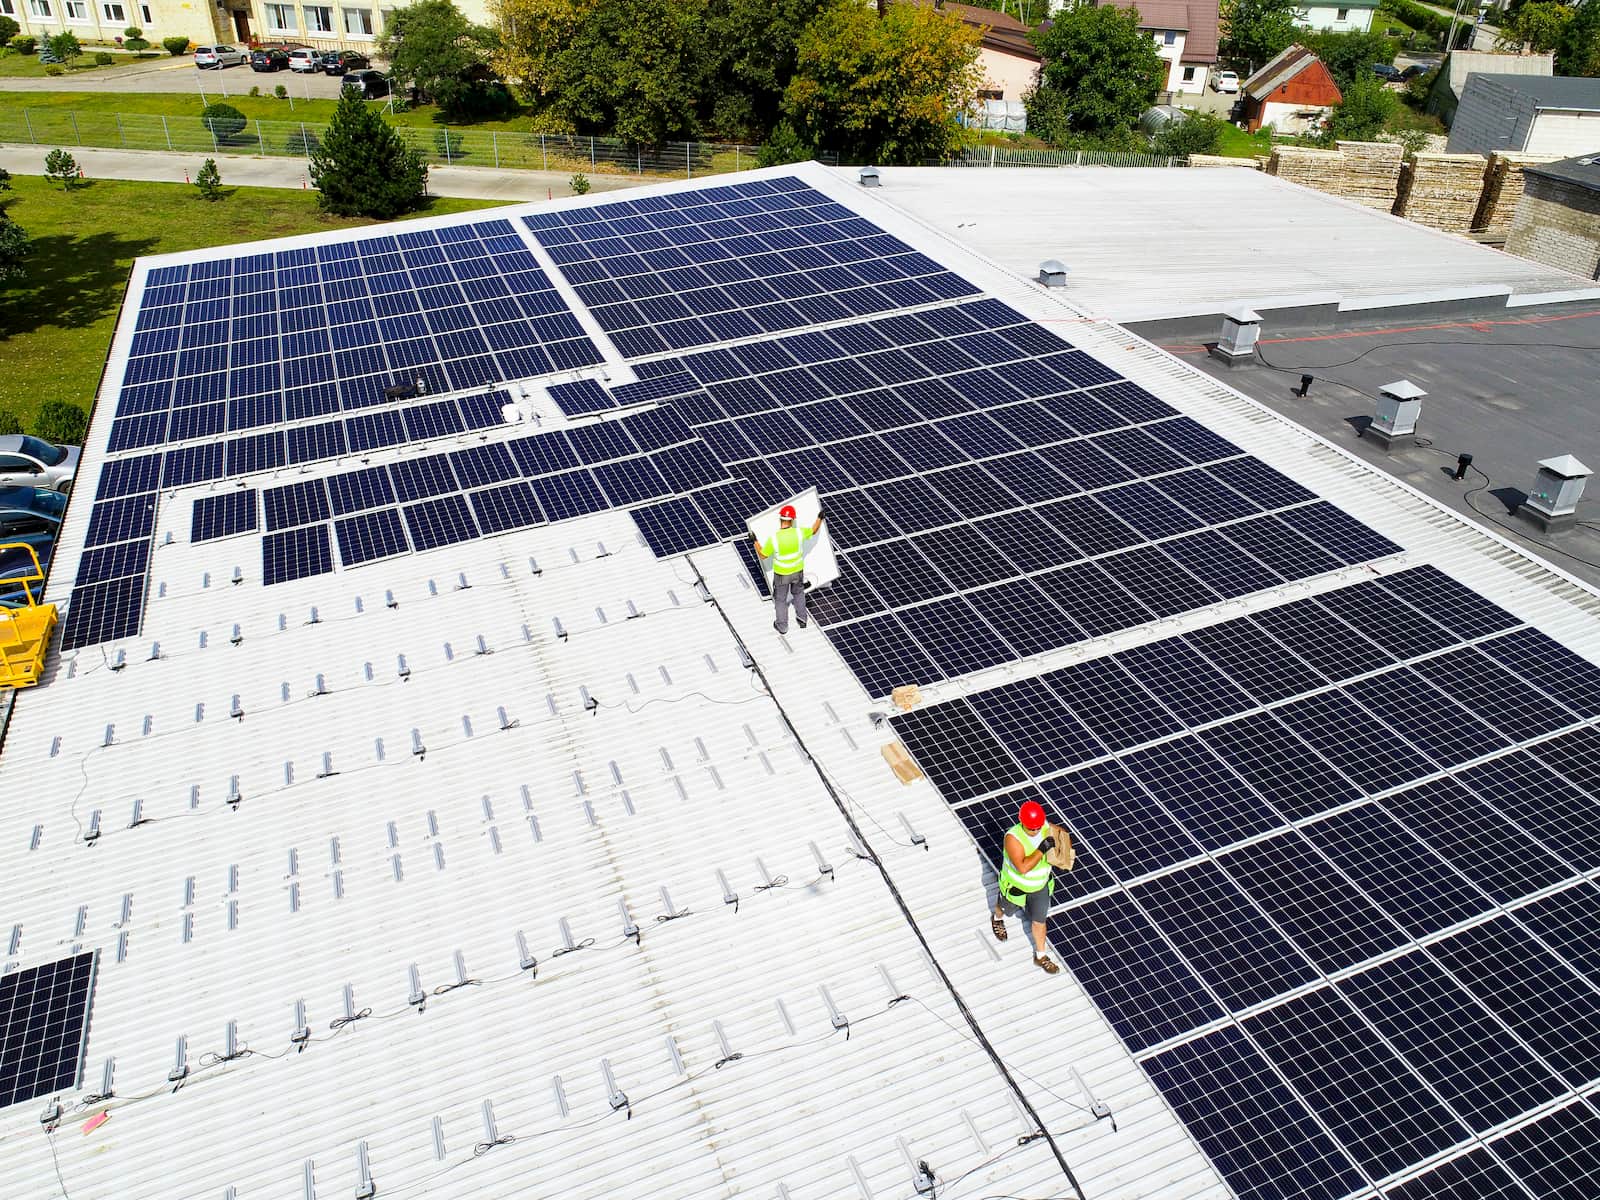 Darbuotojai montuoja saulės elektrinės iš Eternia solar